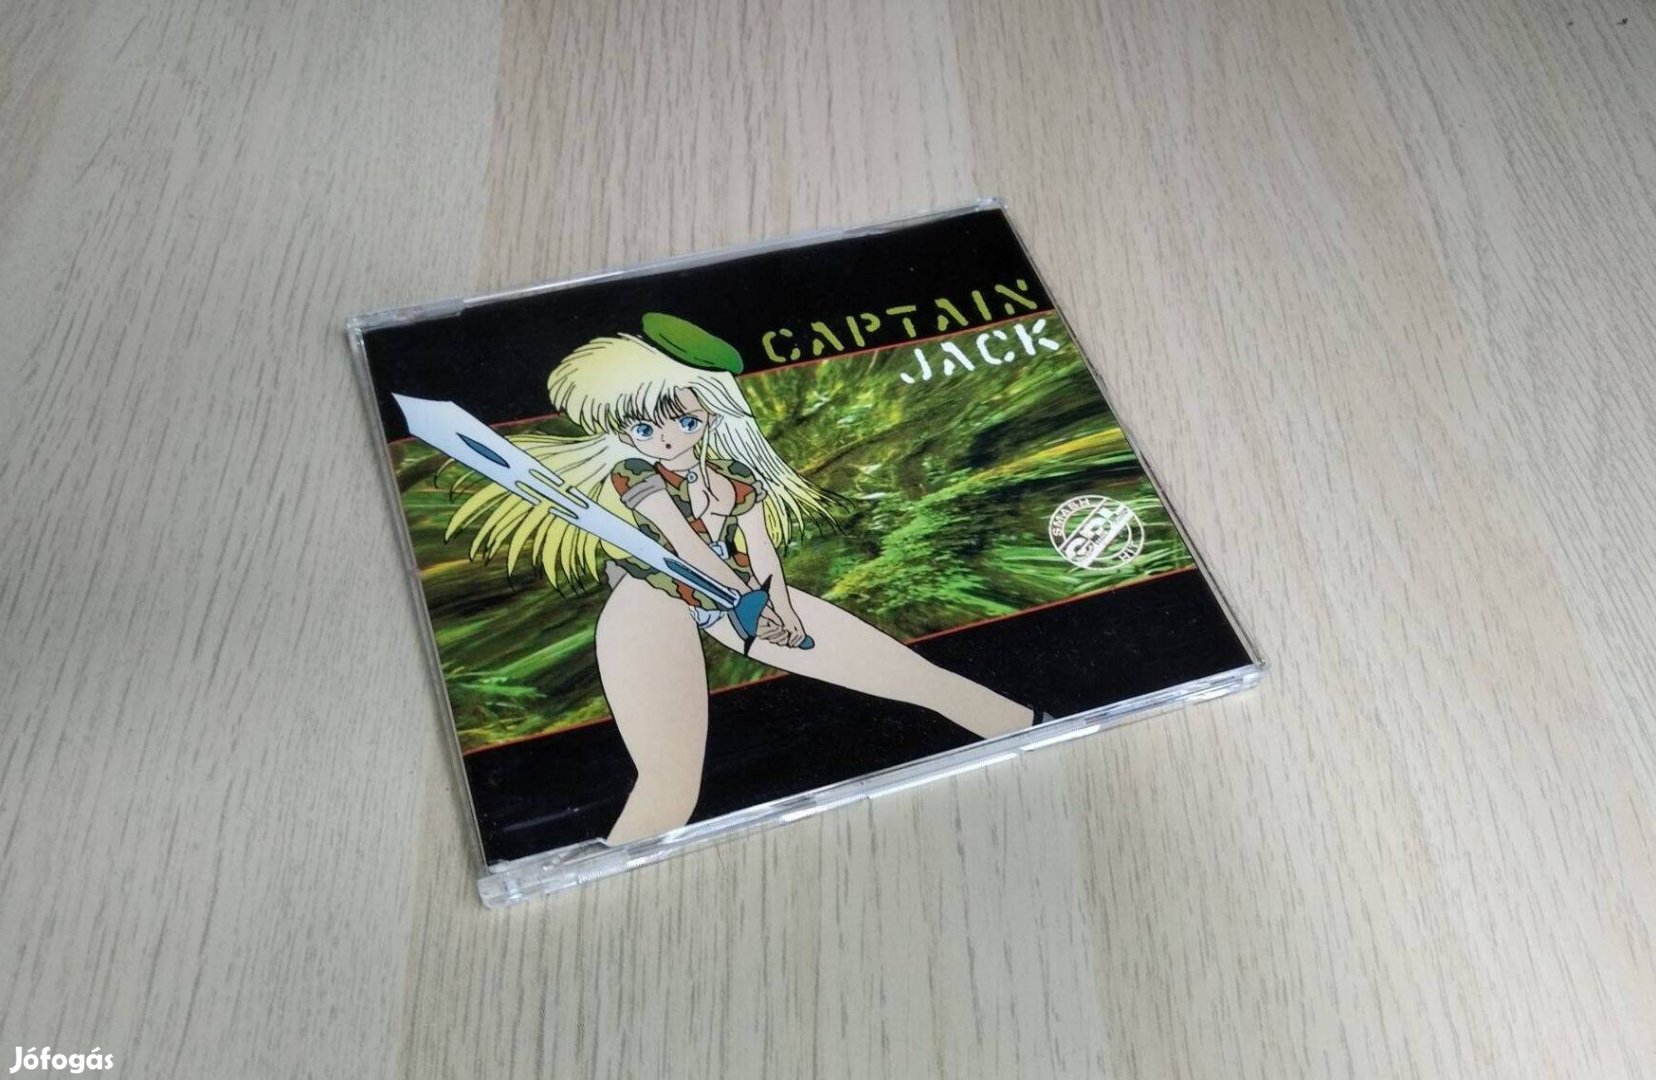 Captain Jack - Captain Jack / Maxi CD 1995